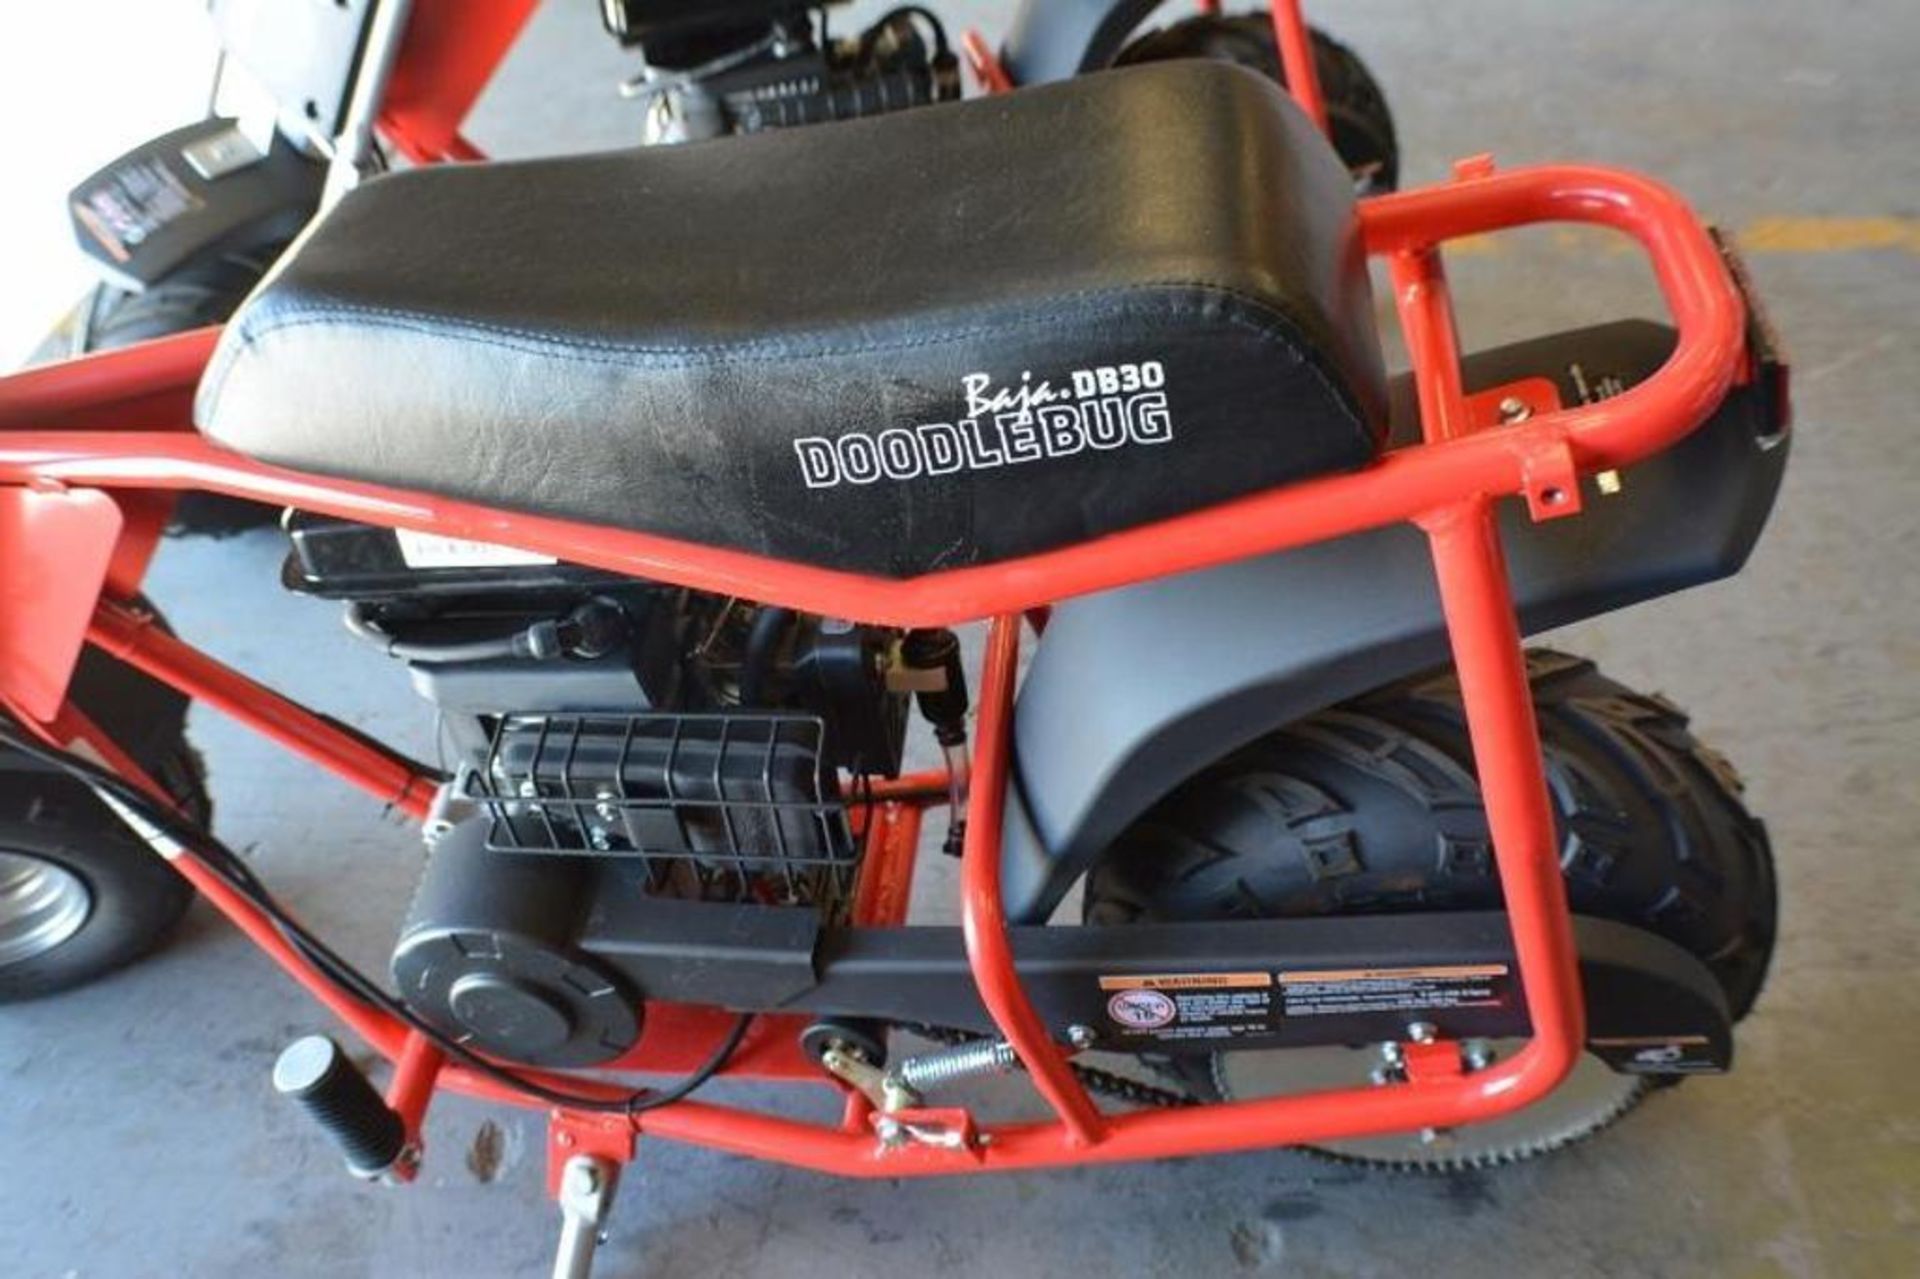 Mini Bike 97cc 4 Stroke Red/ Black Color - Image 5 of 5